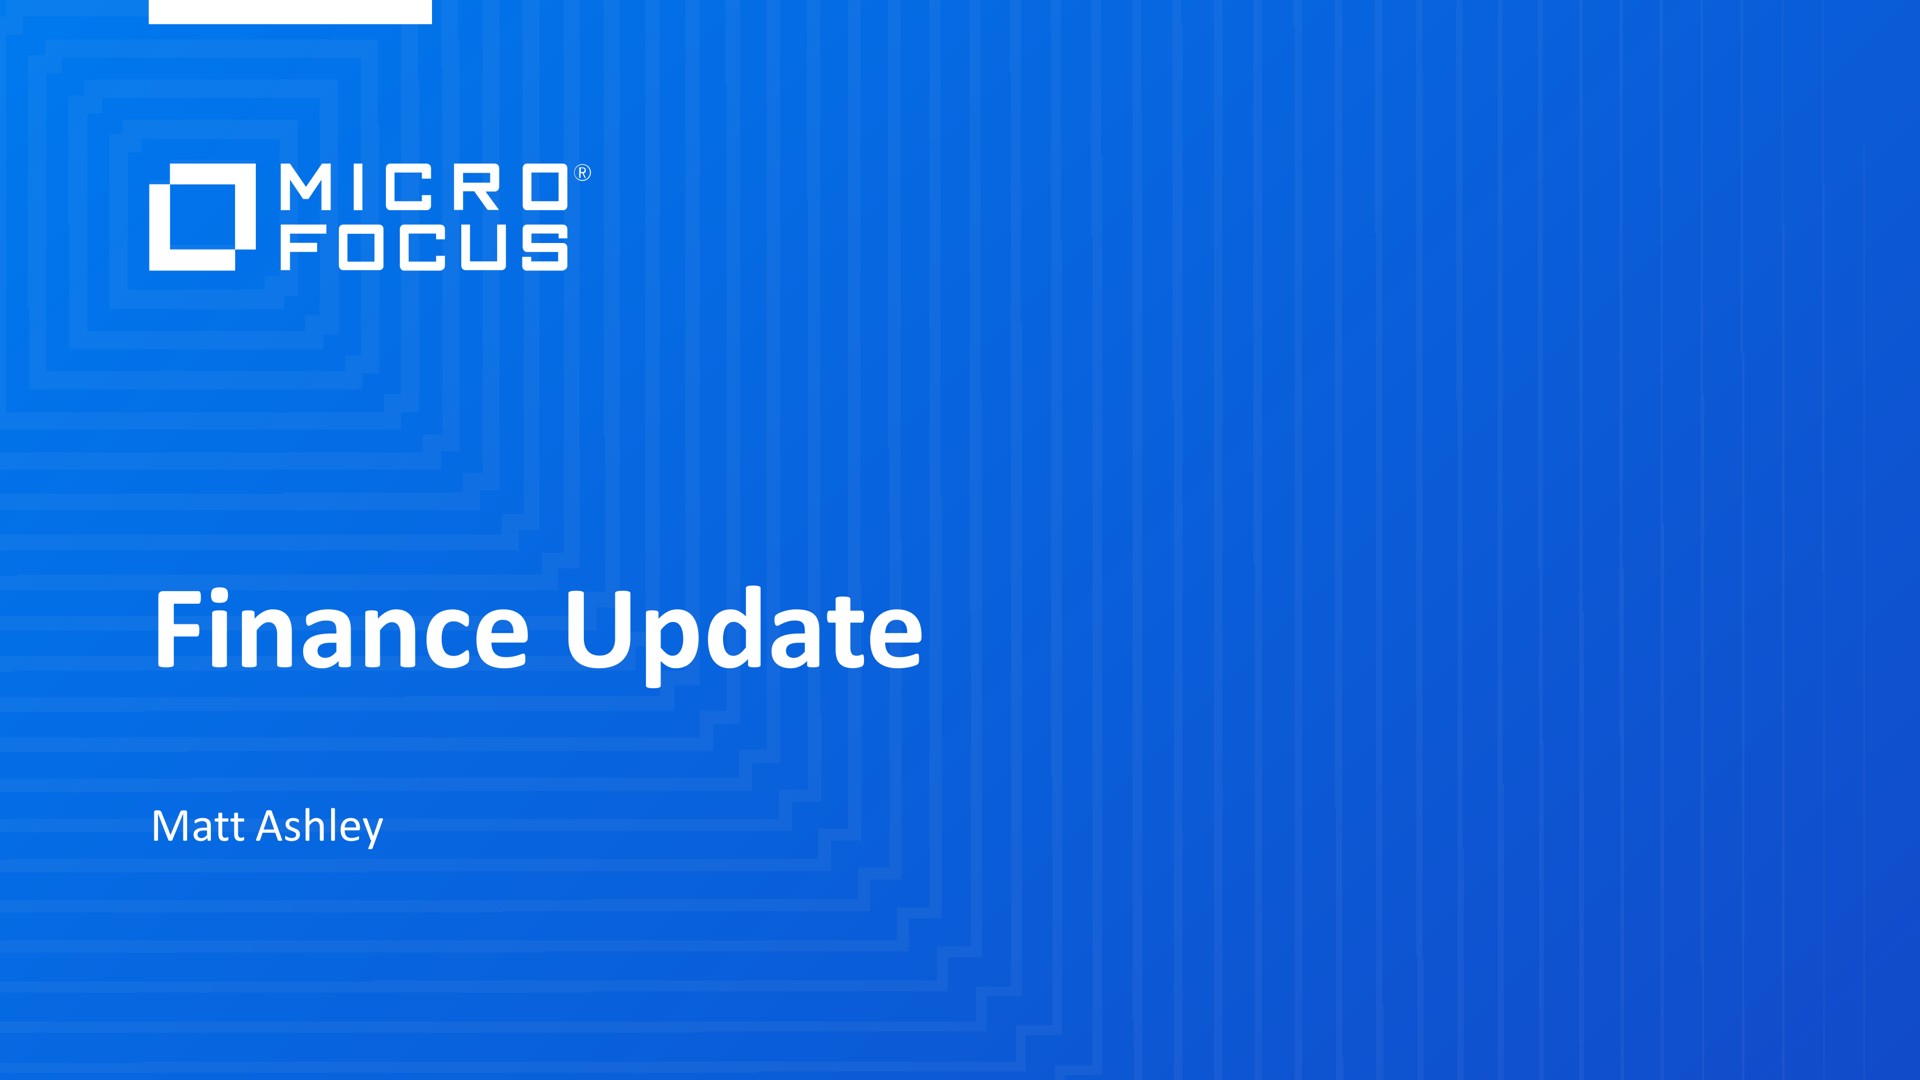 finance update eel | Micro Focus